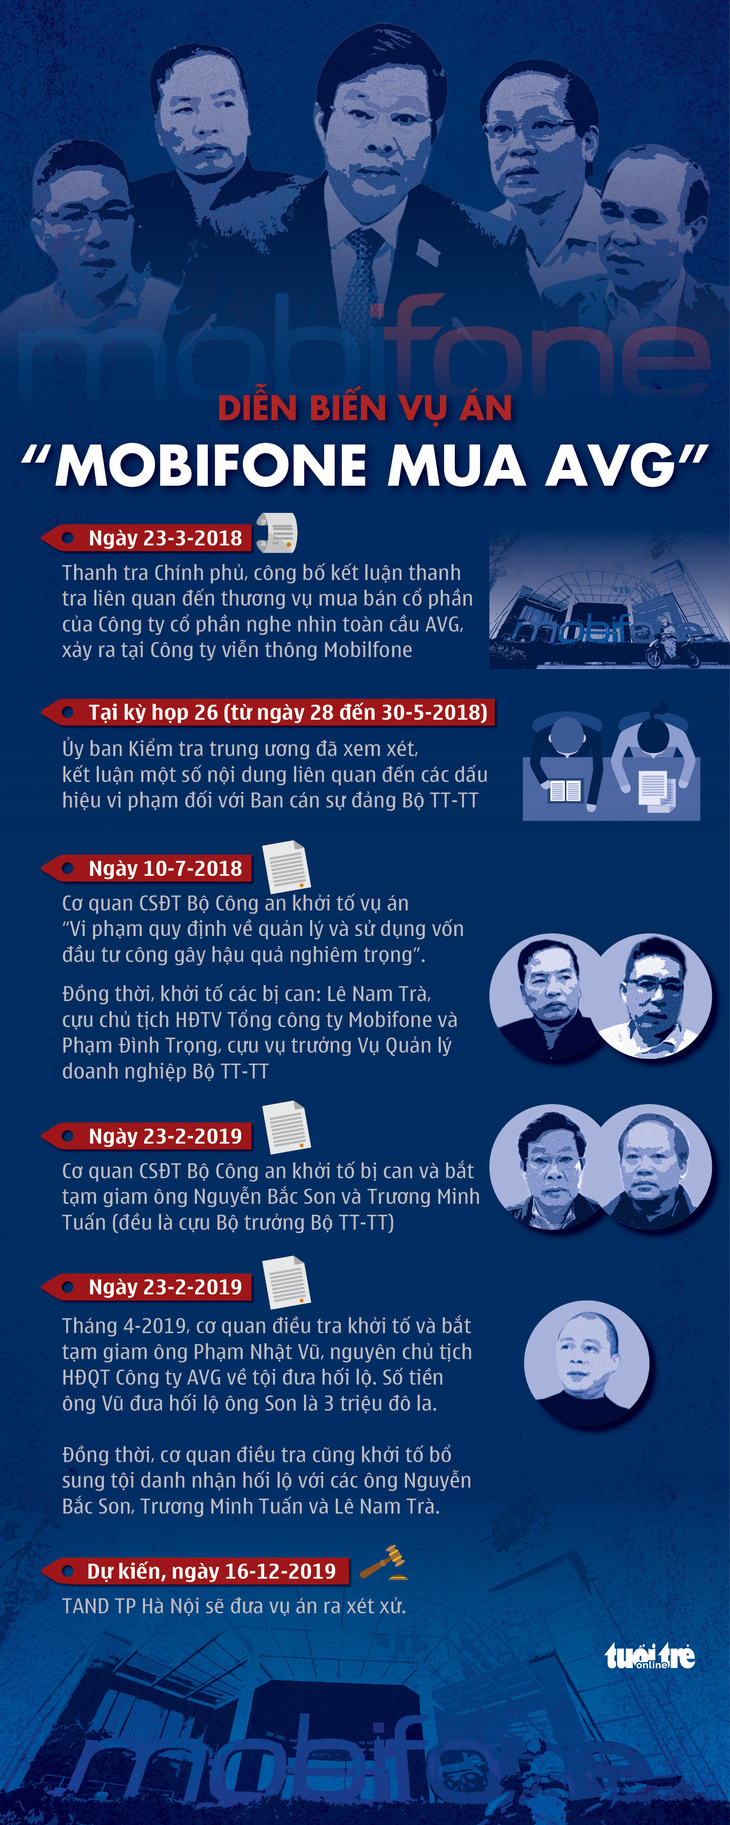 Ngày mai các ông Nguyễn Bắc Son, Trương Minh Tuấn hầu tòa trong vụ án đi vào lịch sử tư pháp - Ảnh 2.